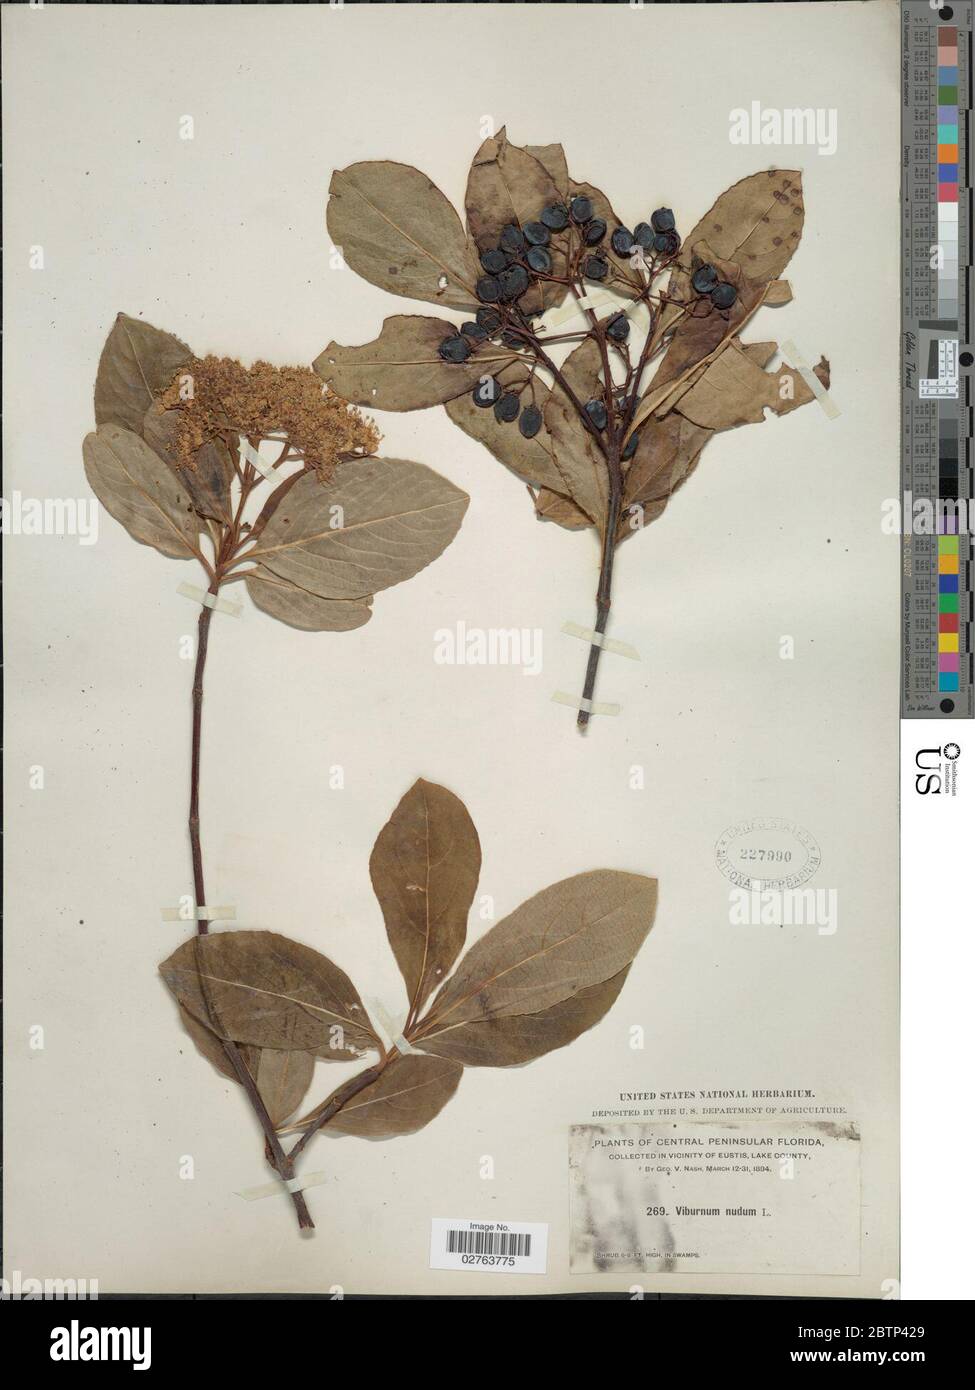 Viburnum nudum L. Stock Photo